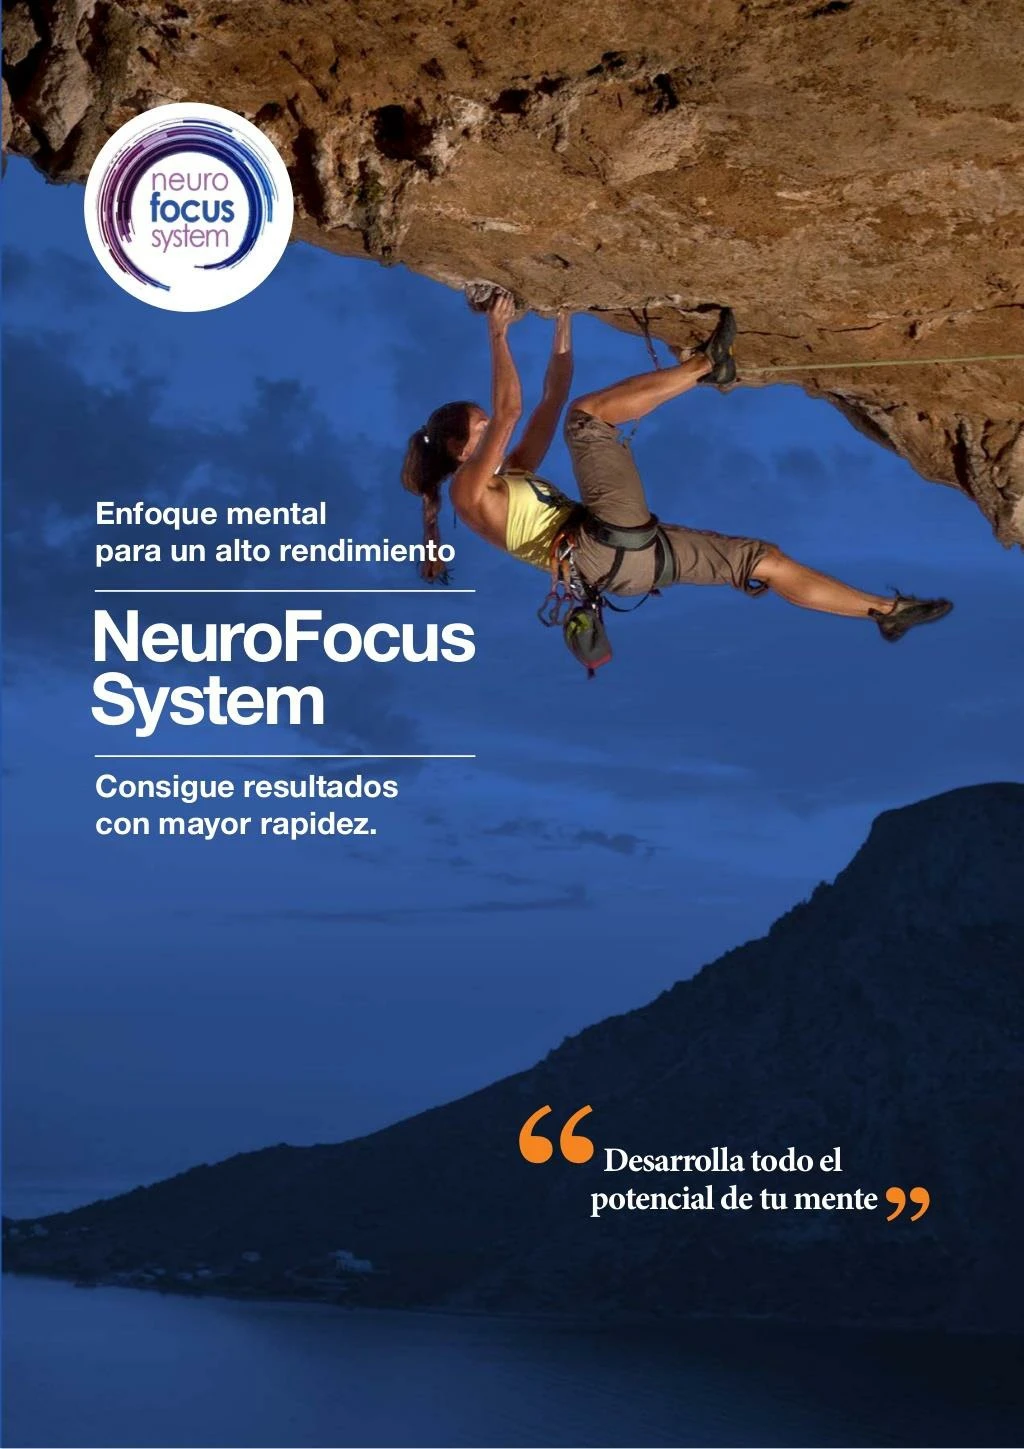 neurofocus system desarrolla todo el potencial de tu mente